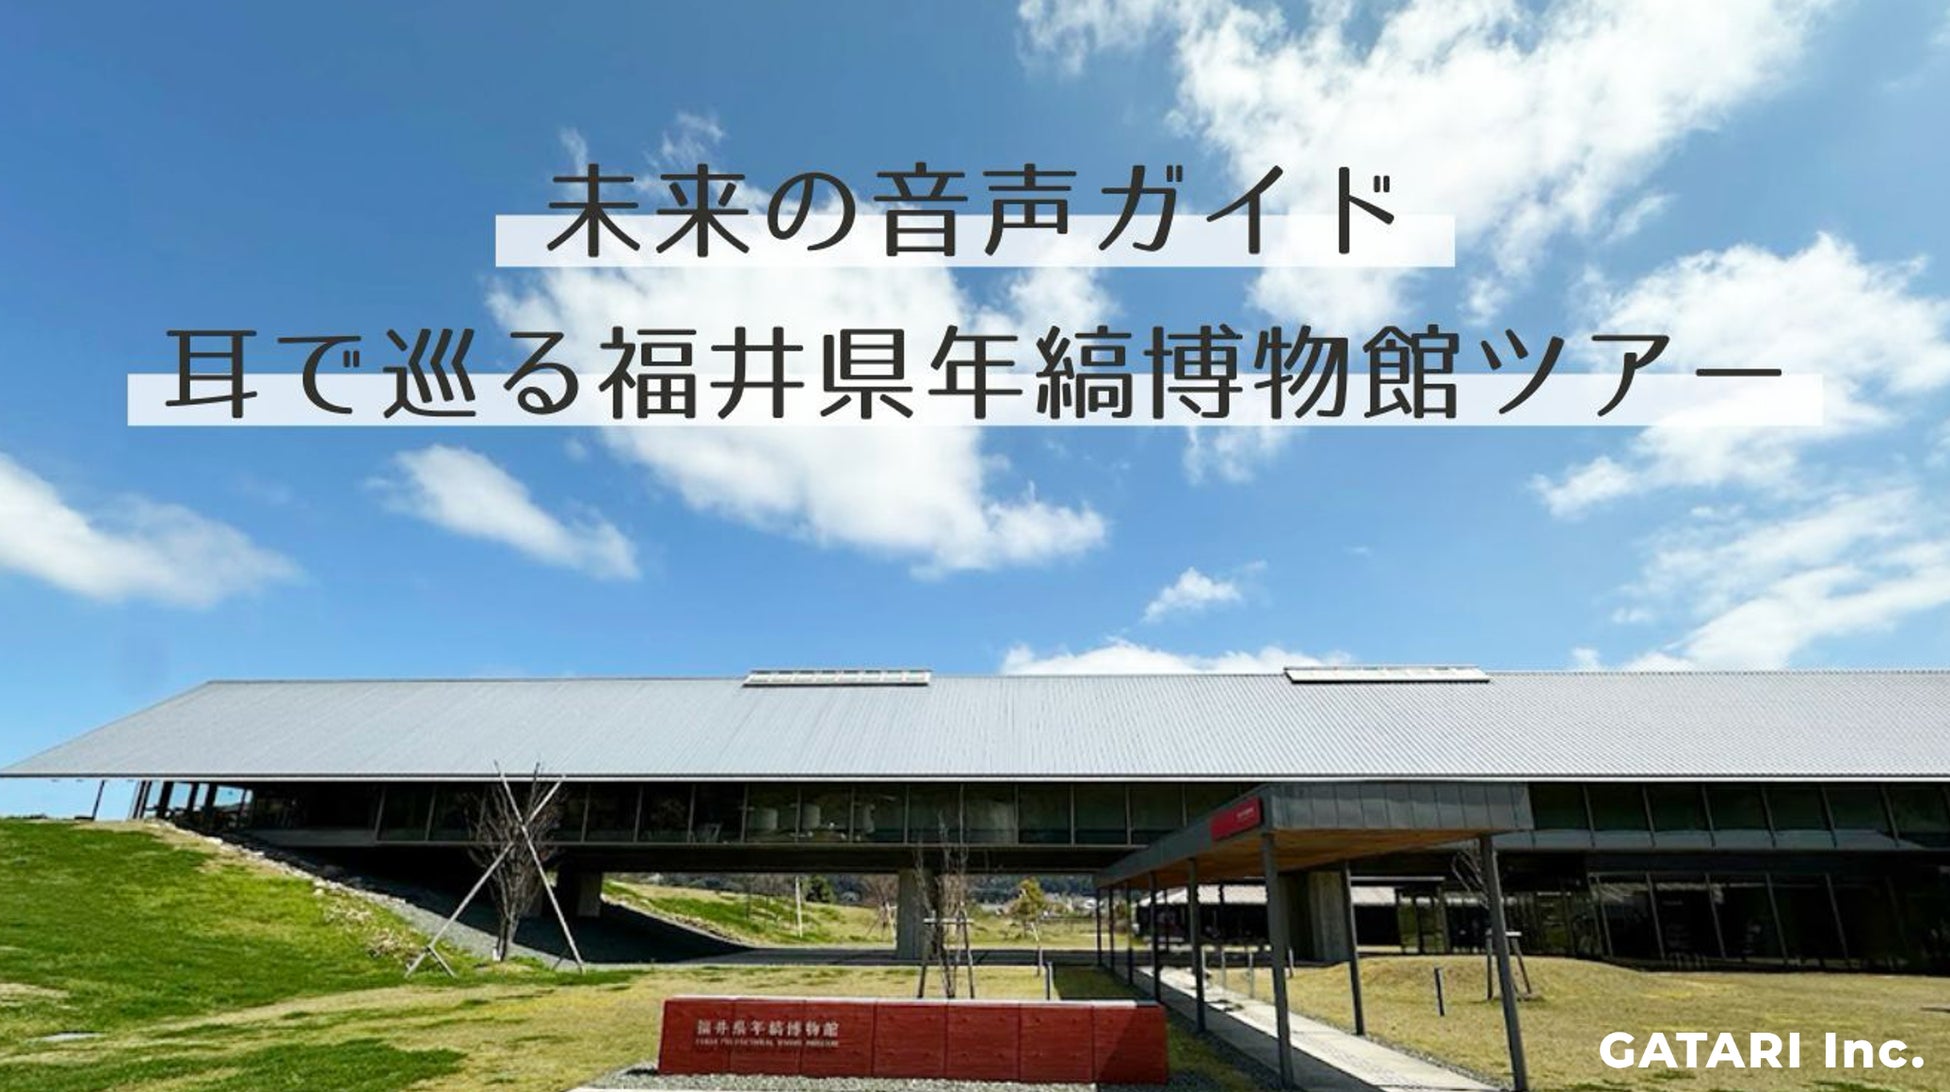 空き家地方創生株式会社が佐渡島で空き家活用した宿を島民限定で半額宿泊開始